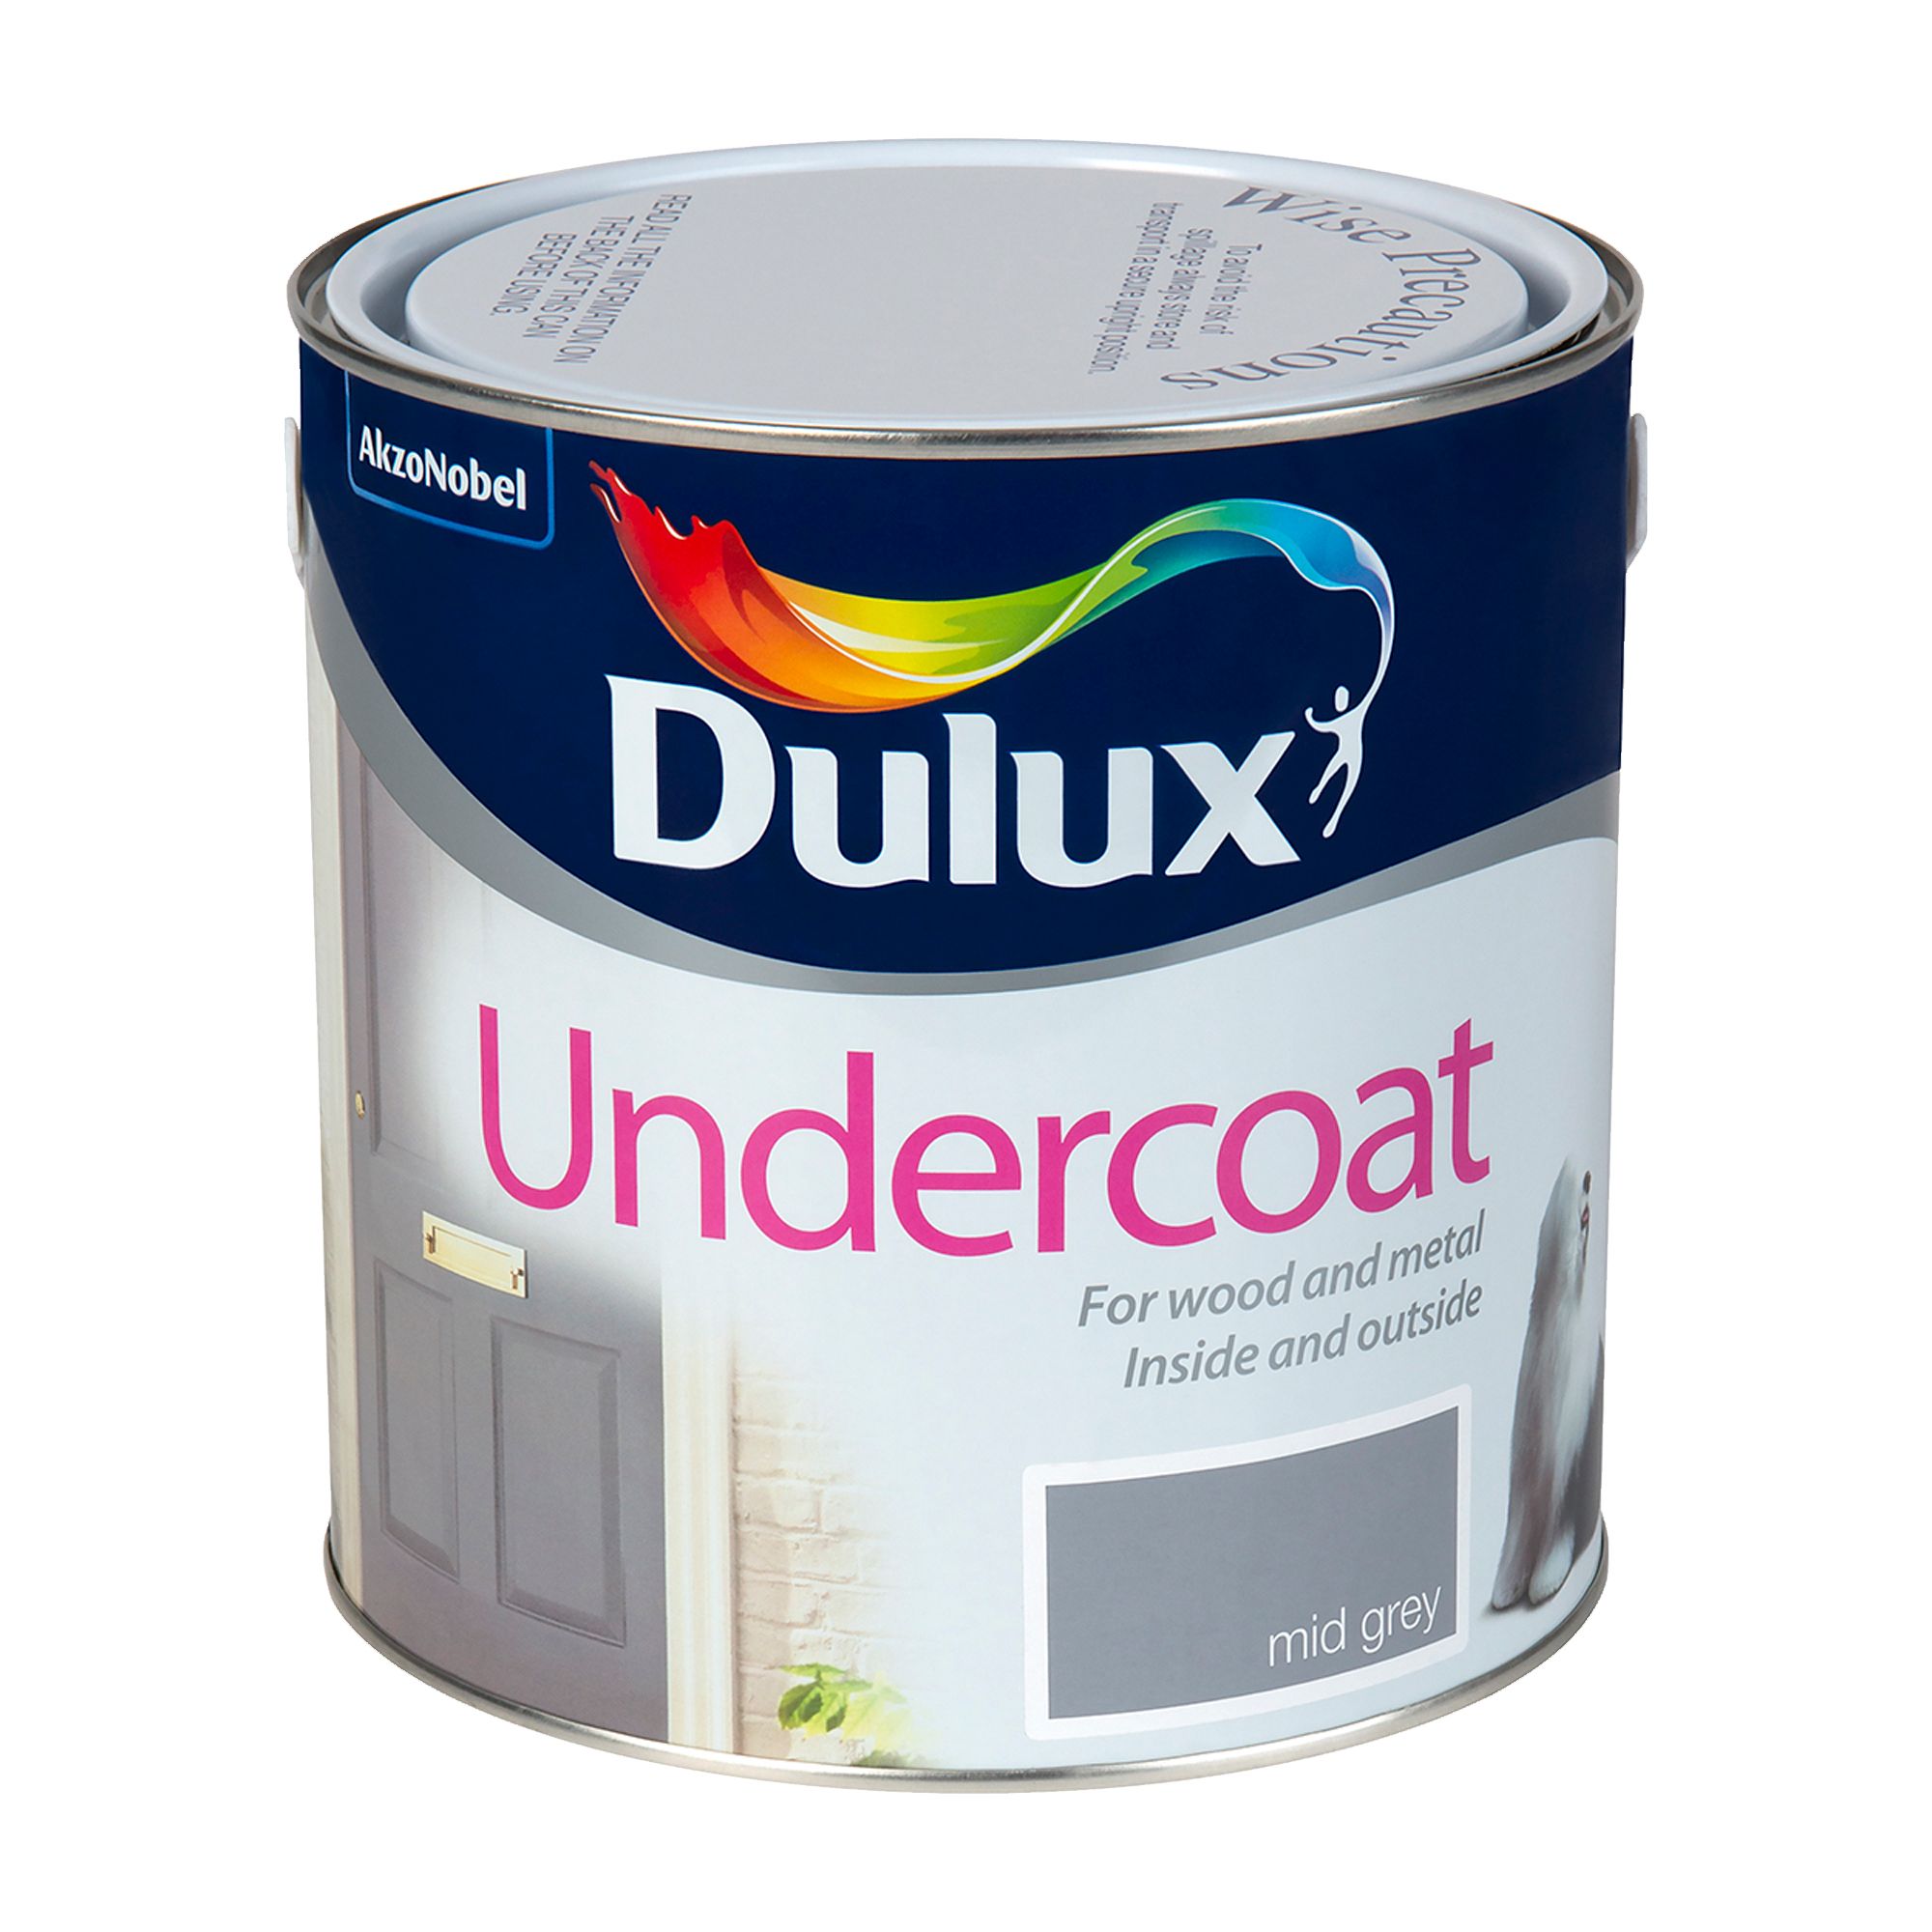 Dulux Professional Mid grey Matt Multi-surface Metal & wood Undercoat, 2.5L